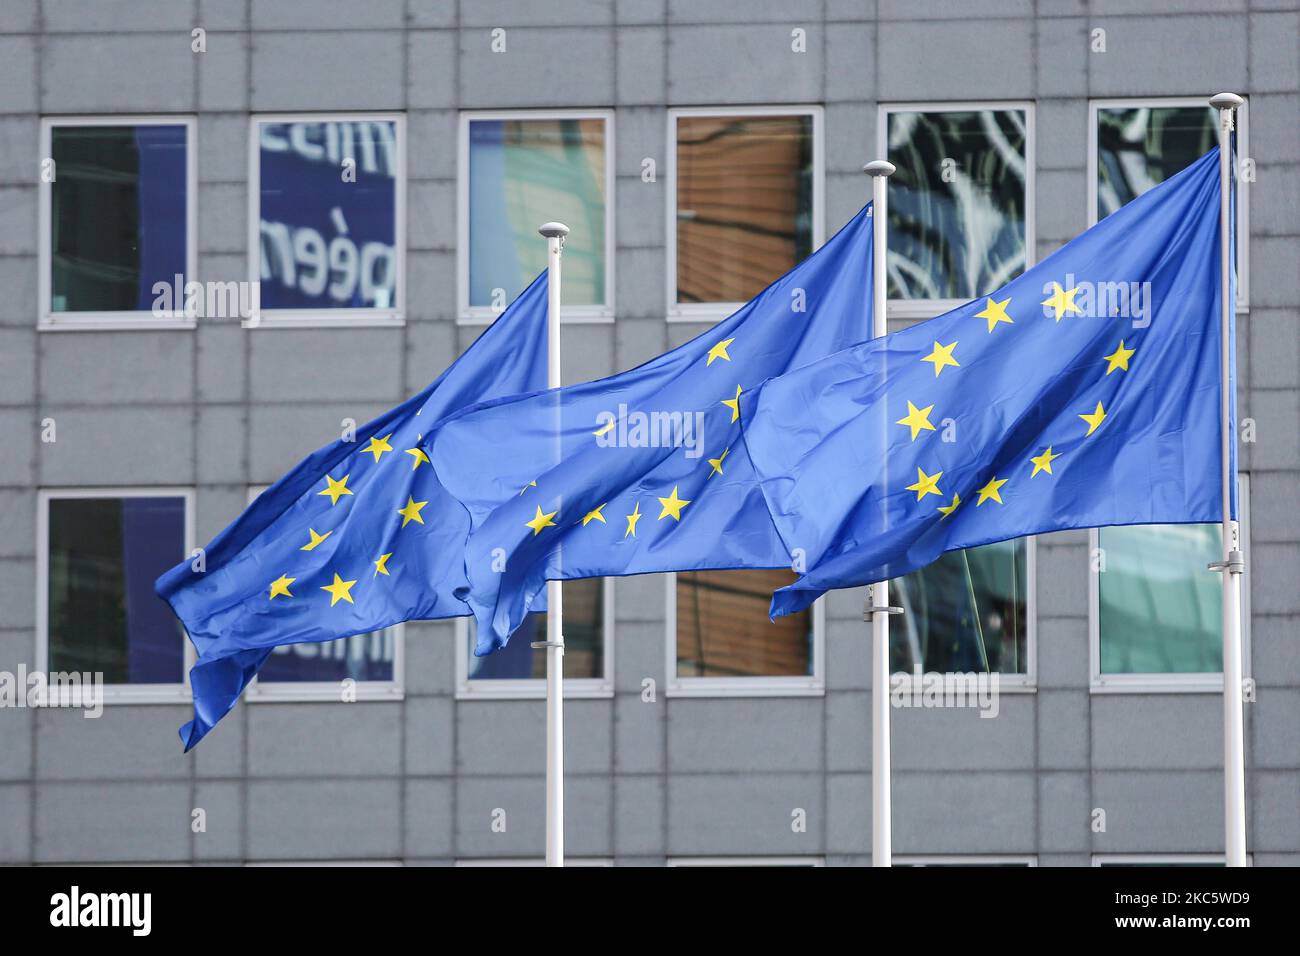 Die Flaggen Europas winken, wie man sie an einem Mast sieht. Die Europäische Flagge ist das Symbol des COE des Europarates und der EU der Europäischen Union, wie sie in der belgischen Hauptstadt vor modernen Architekturgebäuden mit Glas- und Stahlkonstruktion, dem Gebäude Le Berlaymont, dem Sitz der Europäischen Kommission neben dem Forum Europa im Europäischen Viertel in Brüssel, zu sehen ist. Wo sich der Hauptsitz der gesamteuropäischen Institutionen und Organisationen befindet. Brüssel, Belgien am 2020. Oktober (Foto von Nicolas Economou/NurPhoto) Stockfoto